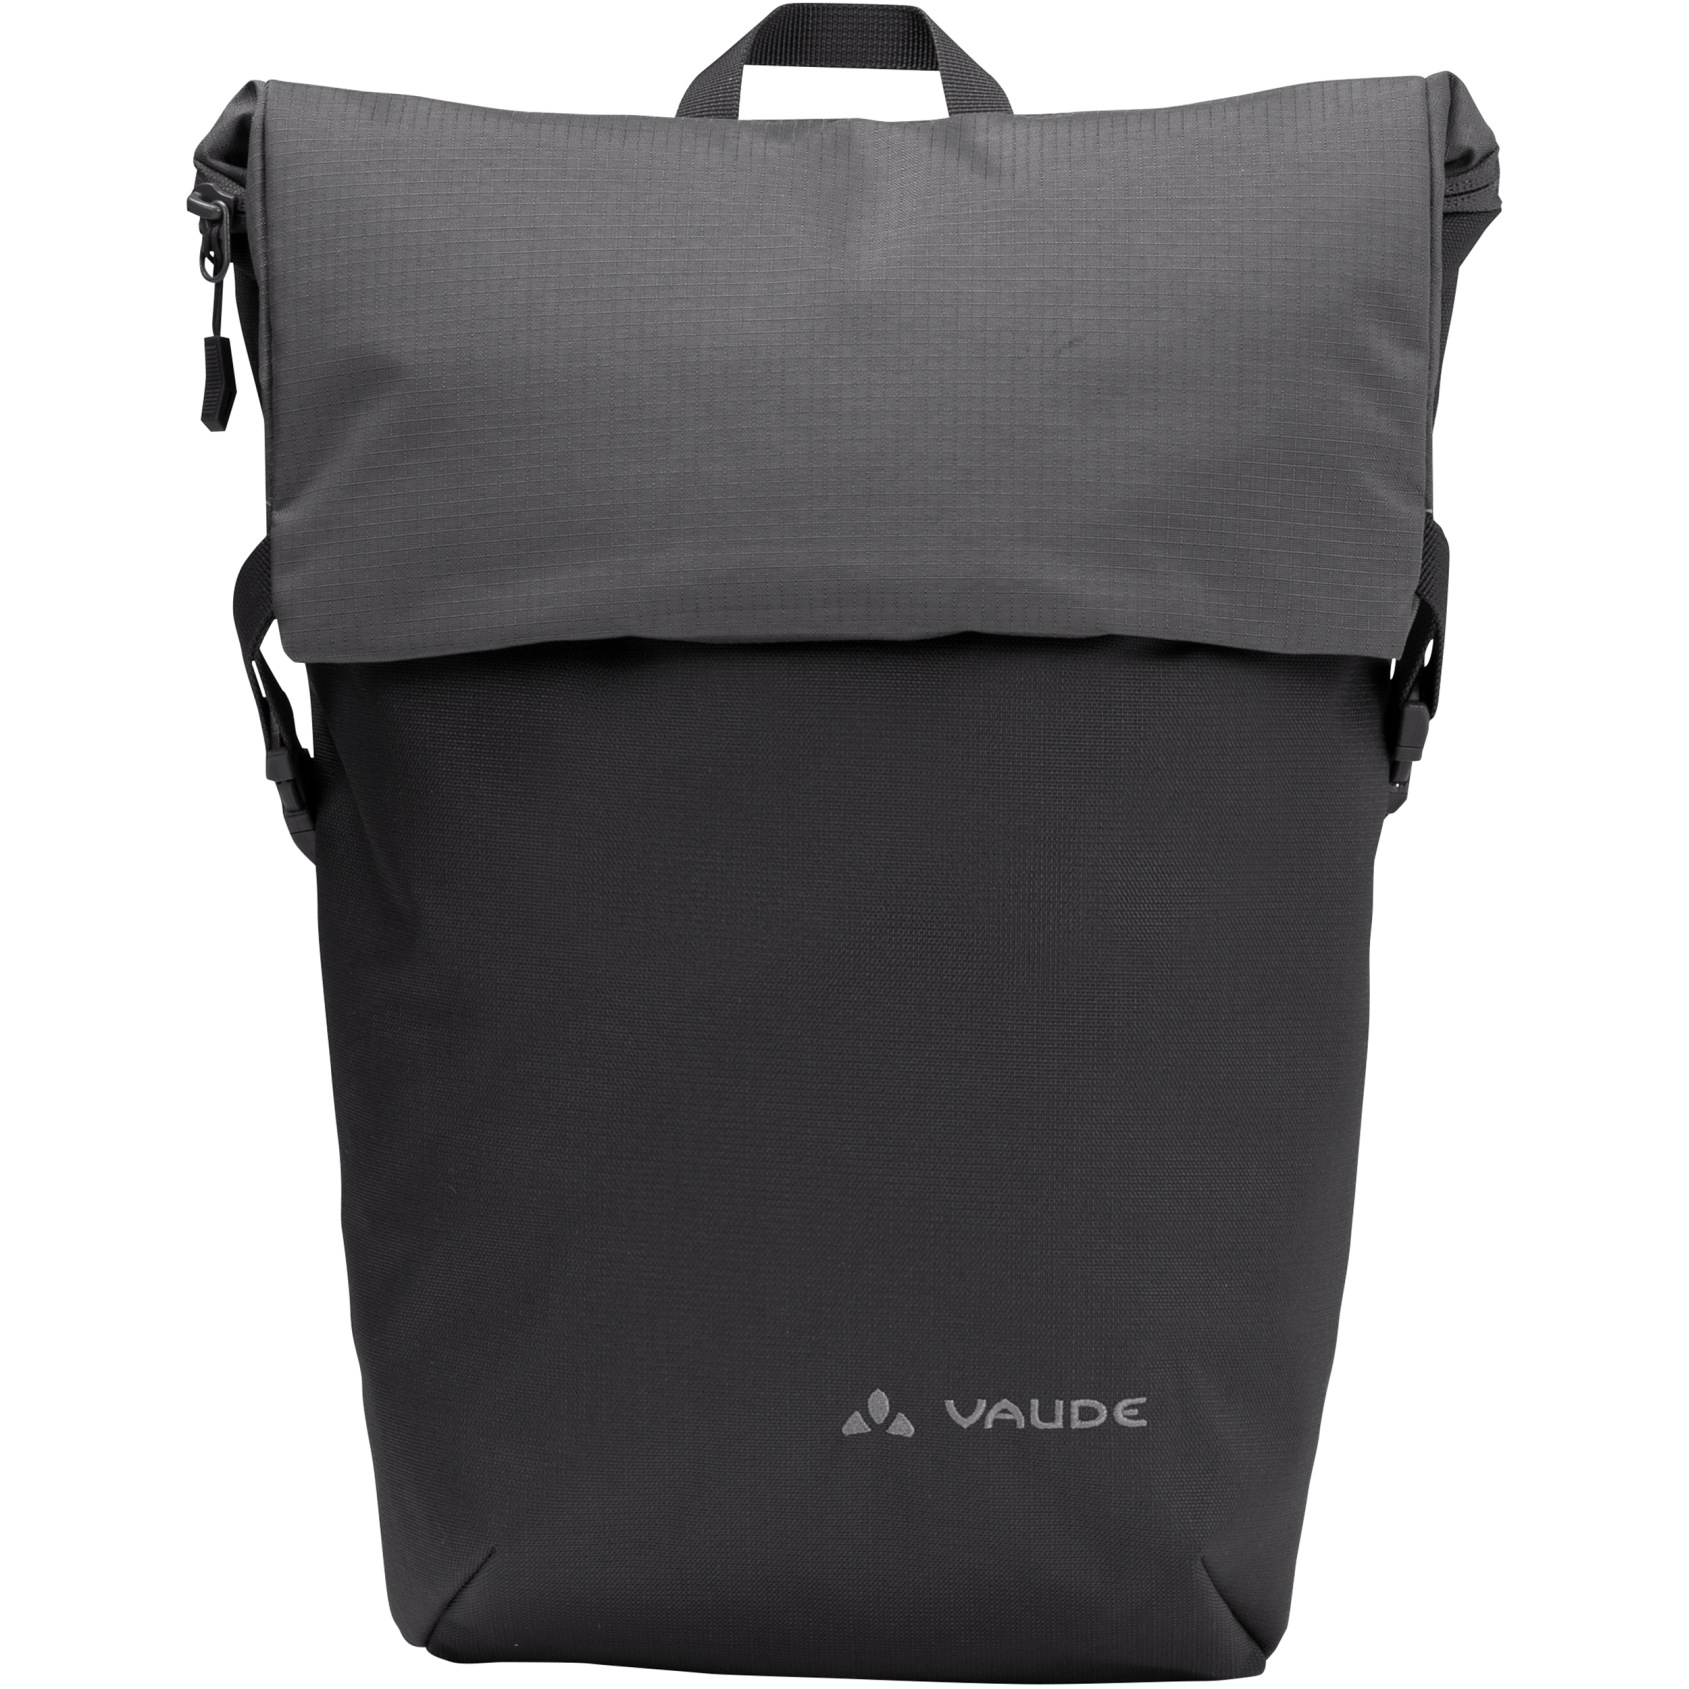 Produktbild von Vaude Unuk II Rucksack 8L - schwarz